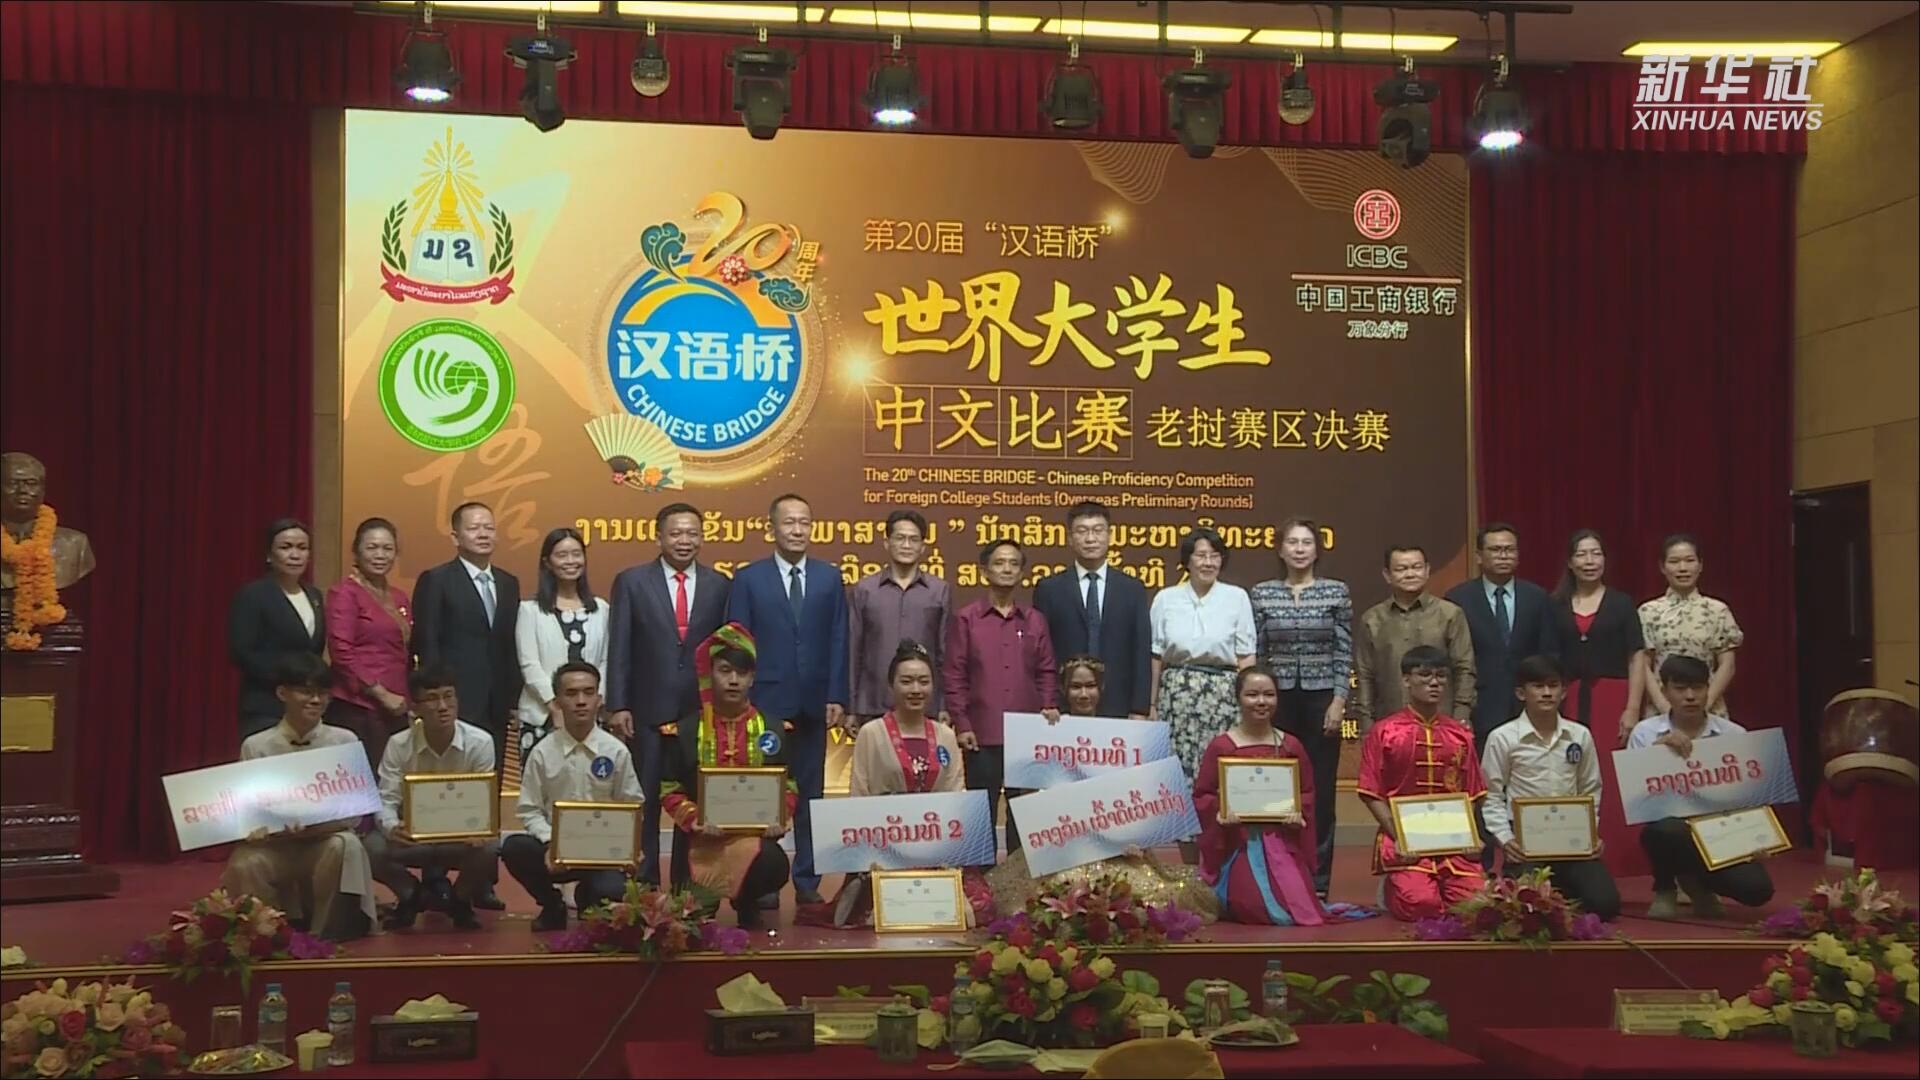 فيديو: مسابقة اللغة الصينية لطلاب الجامعات تقام في لاوس